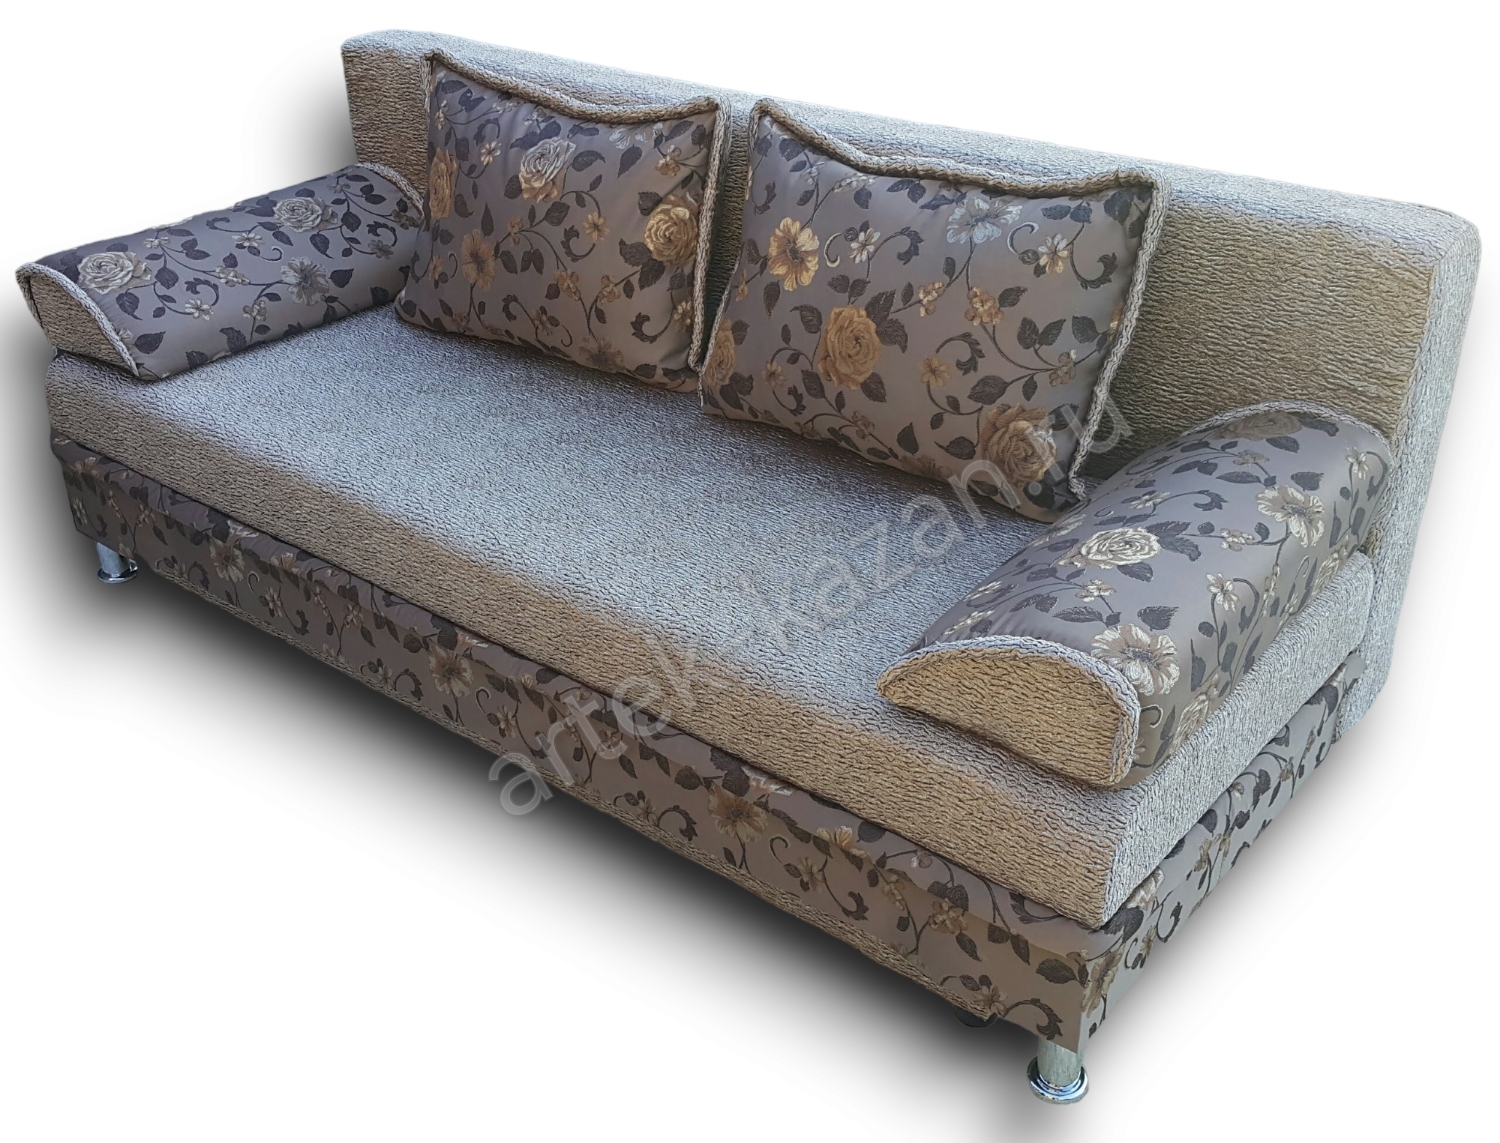 диван еврокнижка Эконом фото № 6. Купить недорогой диван по низкой цене от производителя можно у нас.